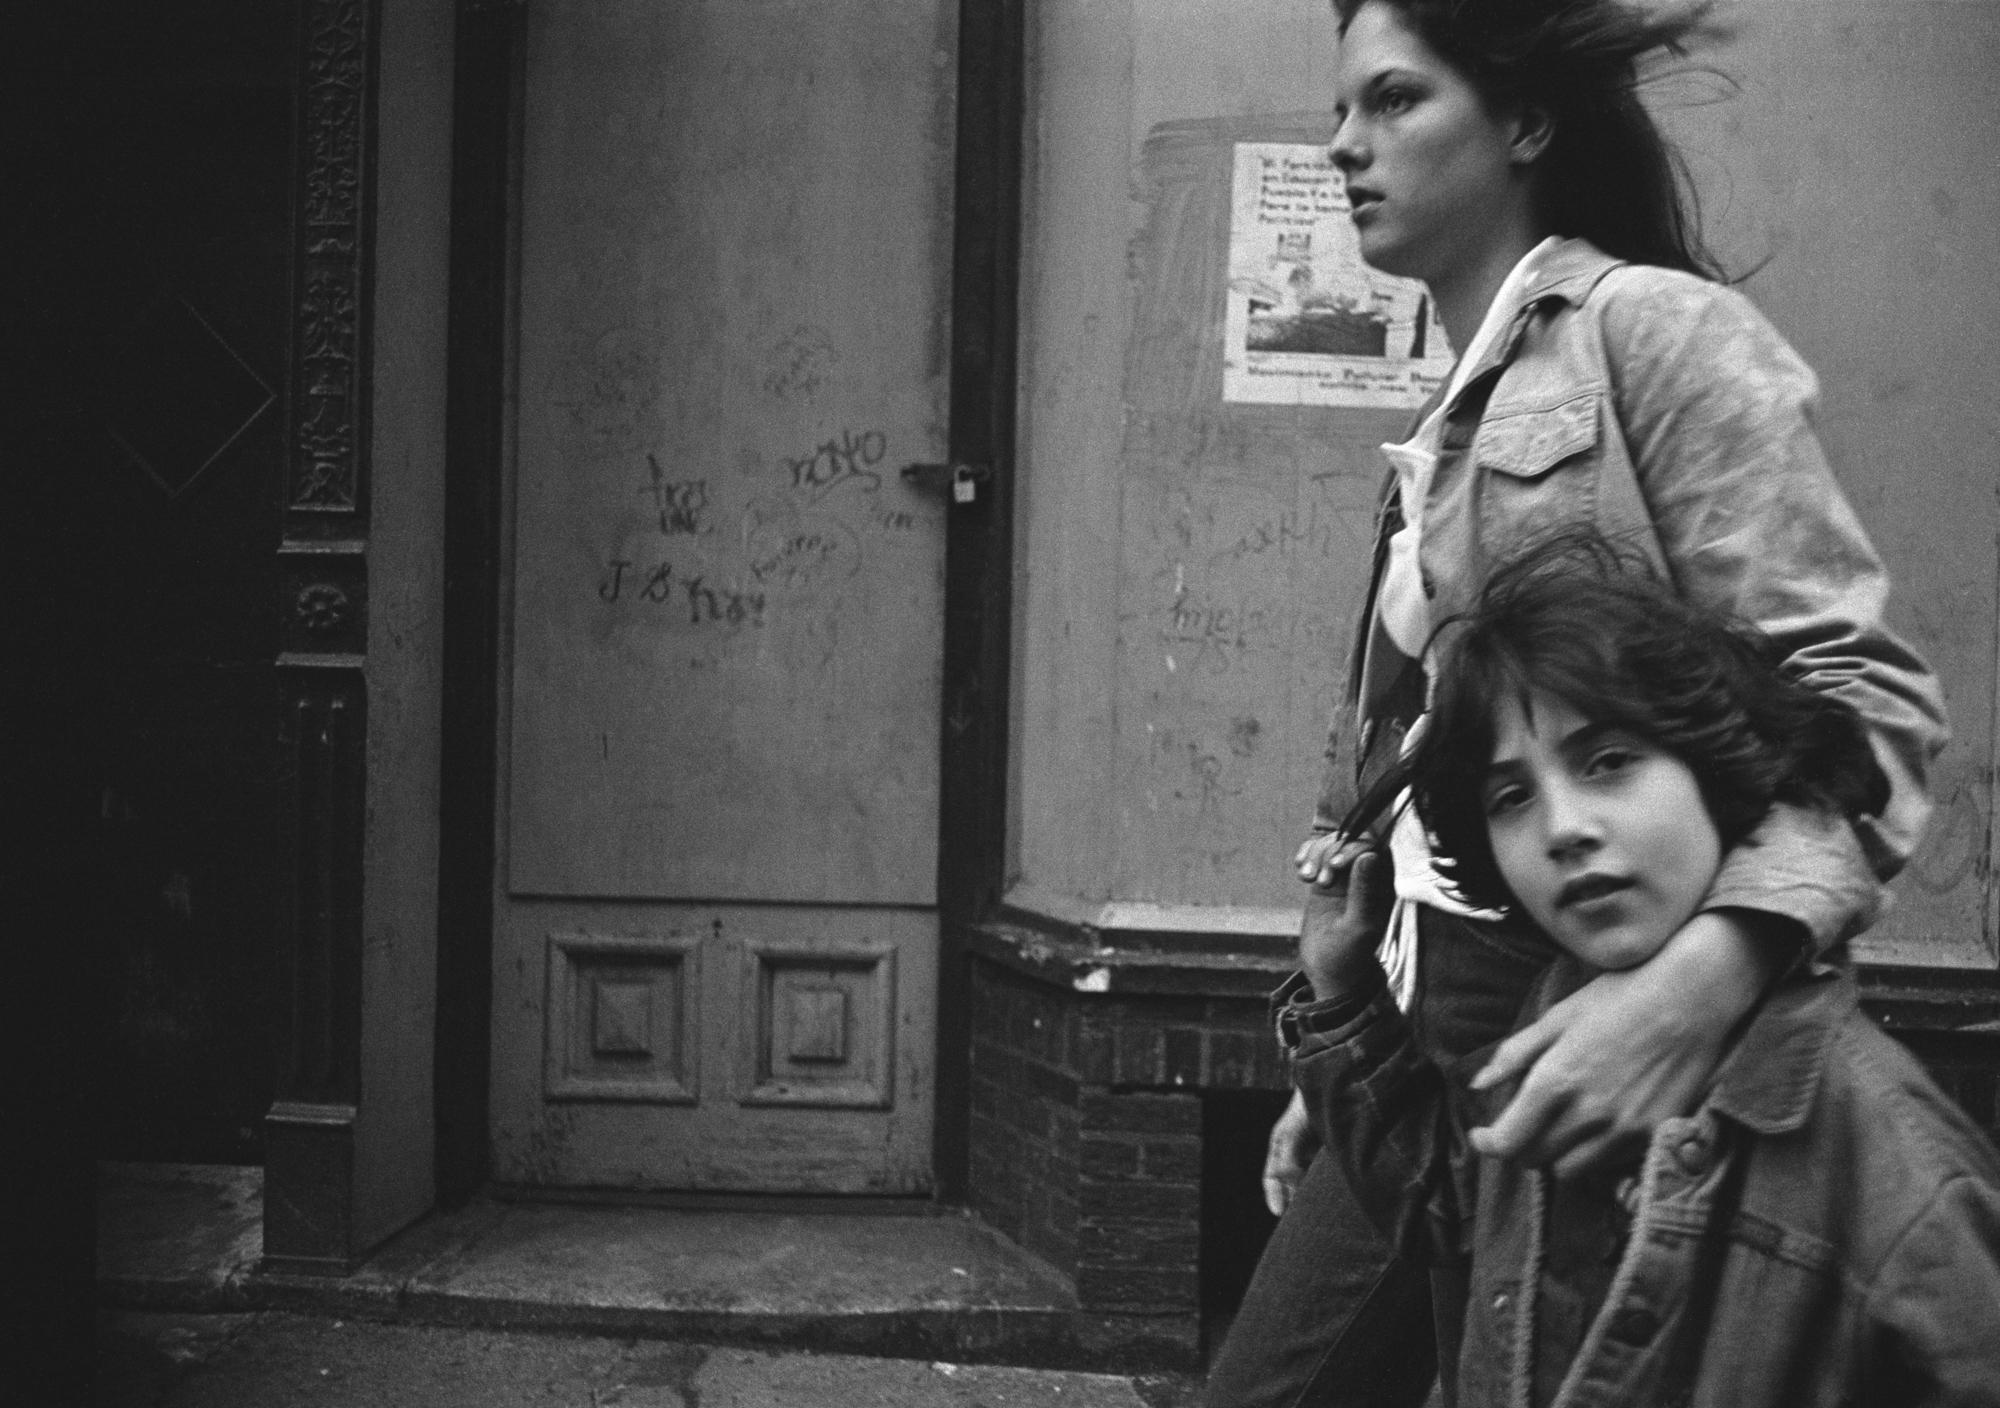 Tina and Julia on Mott Street, 1978